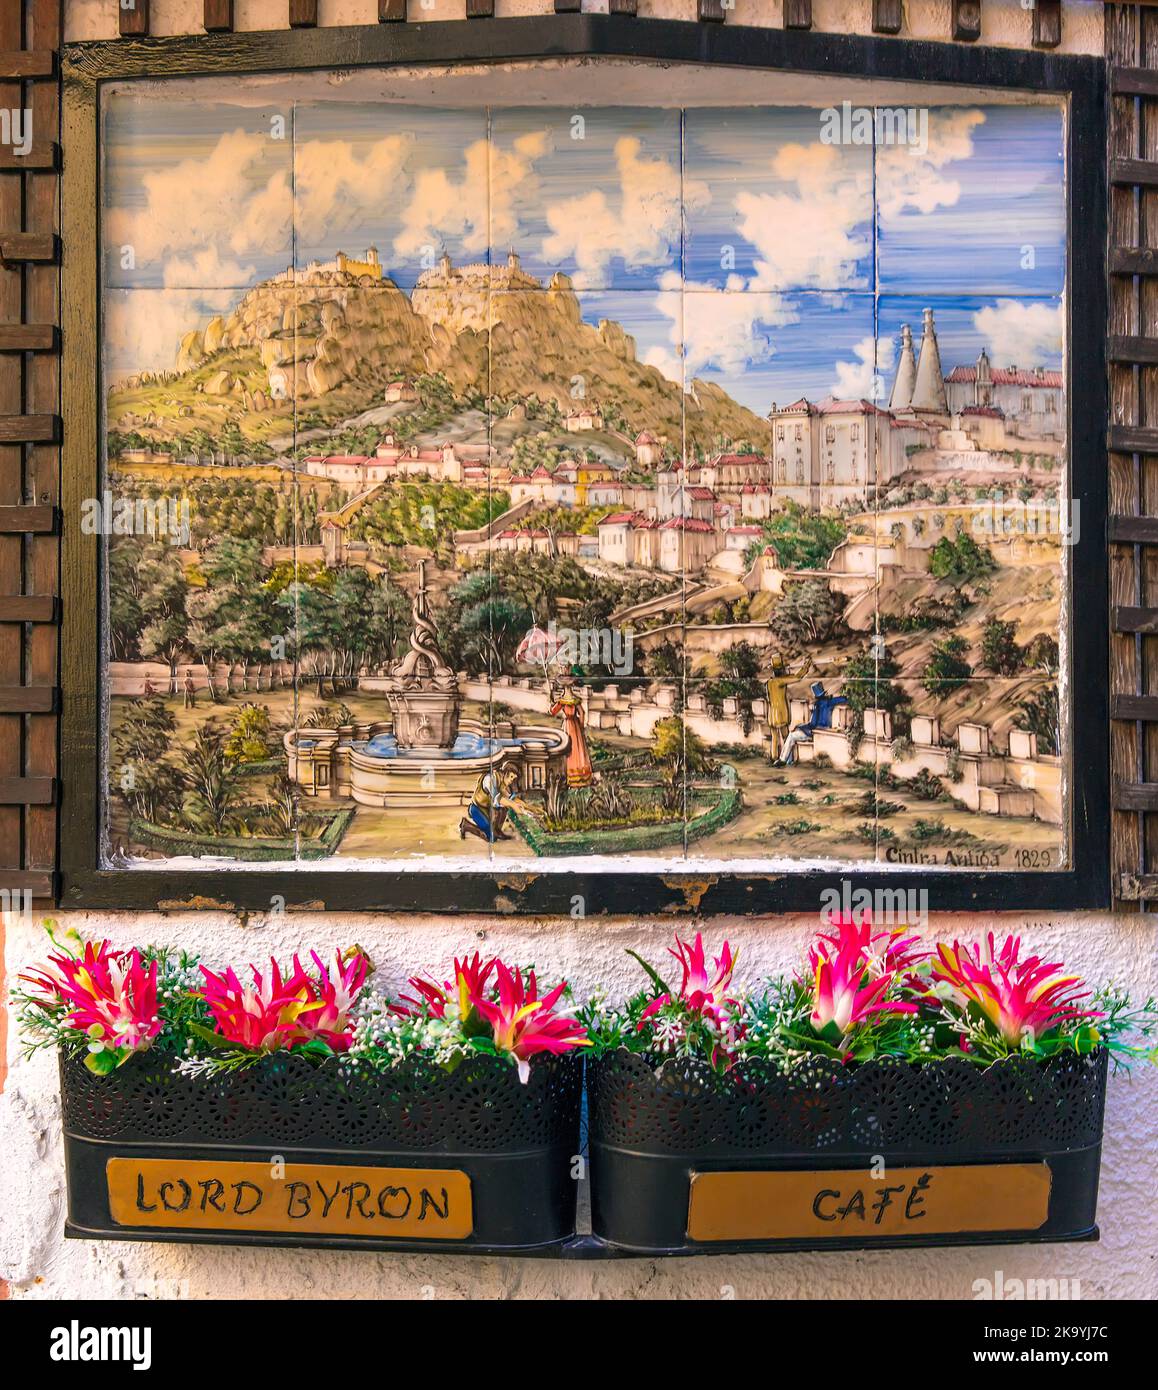 Des tuiles figuratives commémorent la visite du poète anglais Lord Byron à Sintra, Portugal Banque D'Images